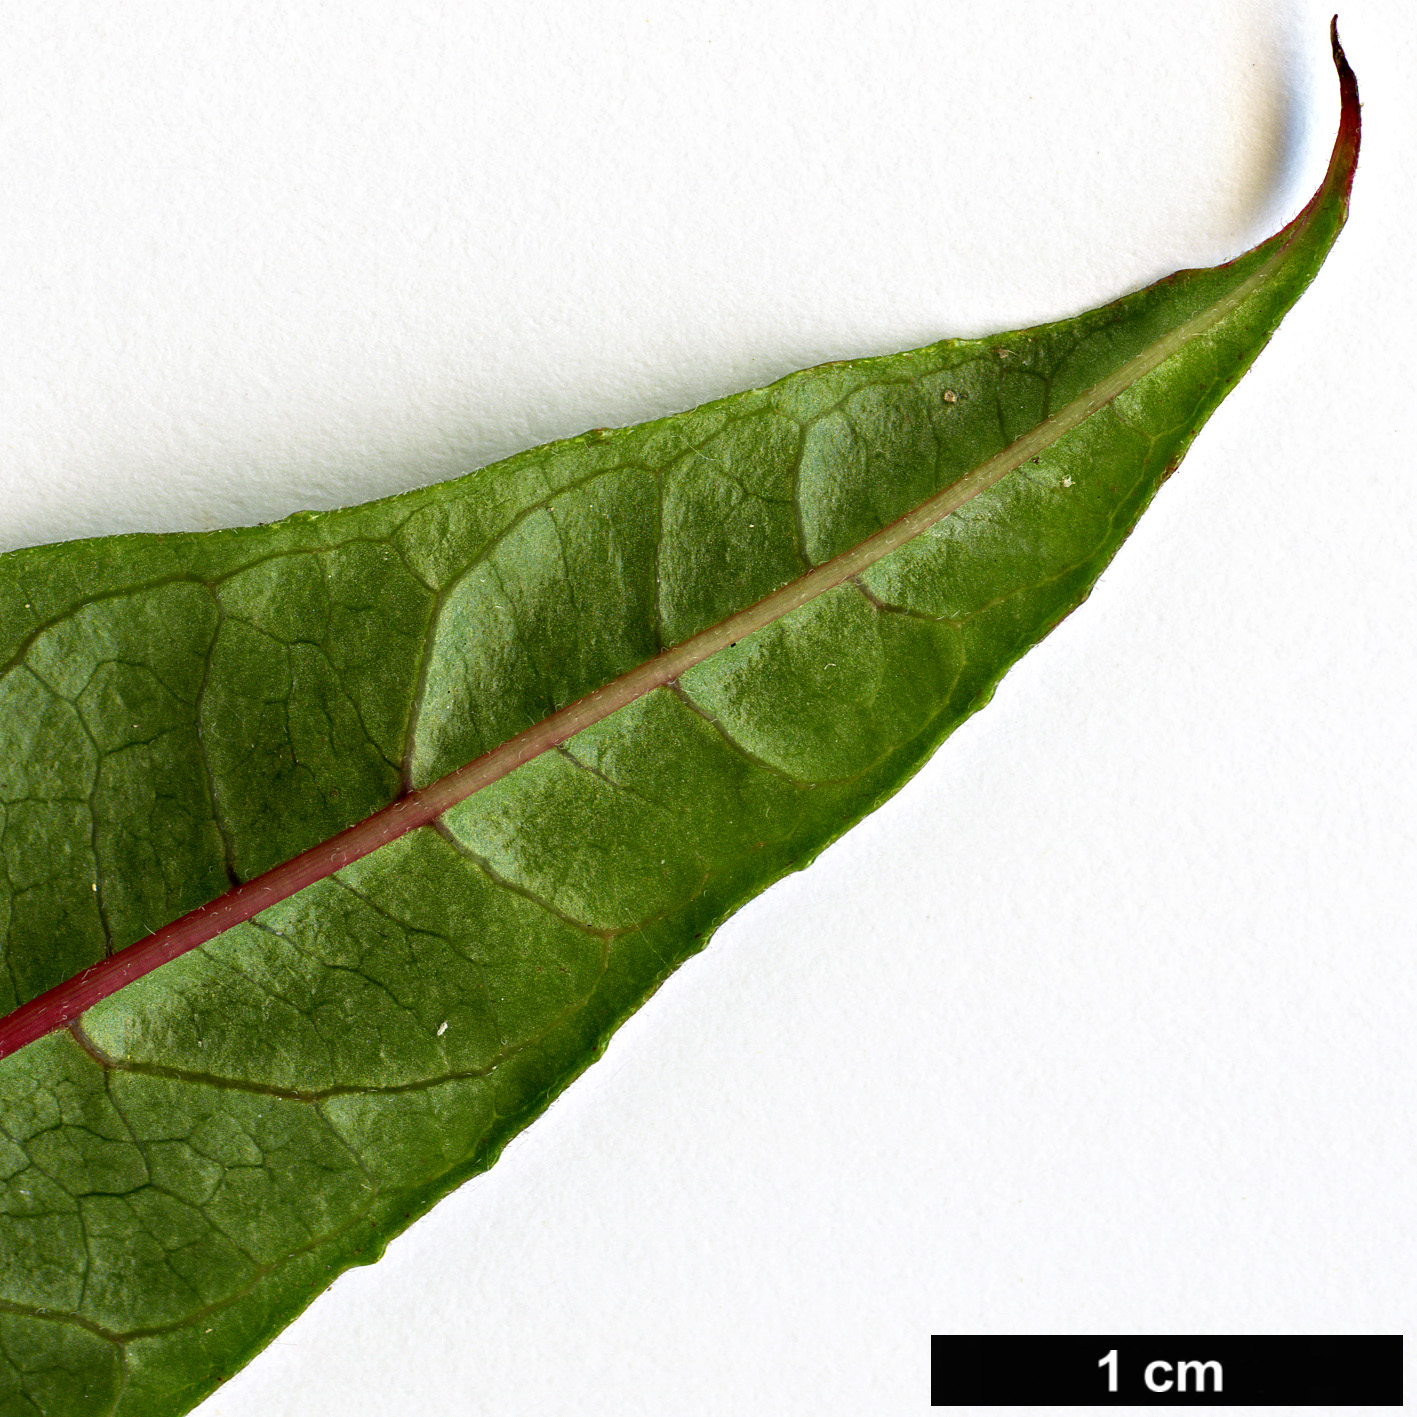 High resolution image: Family: Onagraceae - Genus: Fuchsia - Taxon: petiolaris